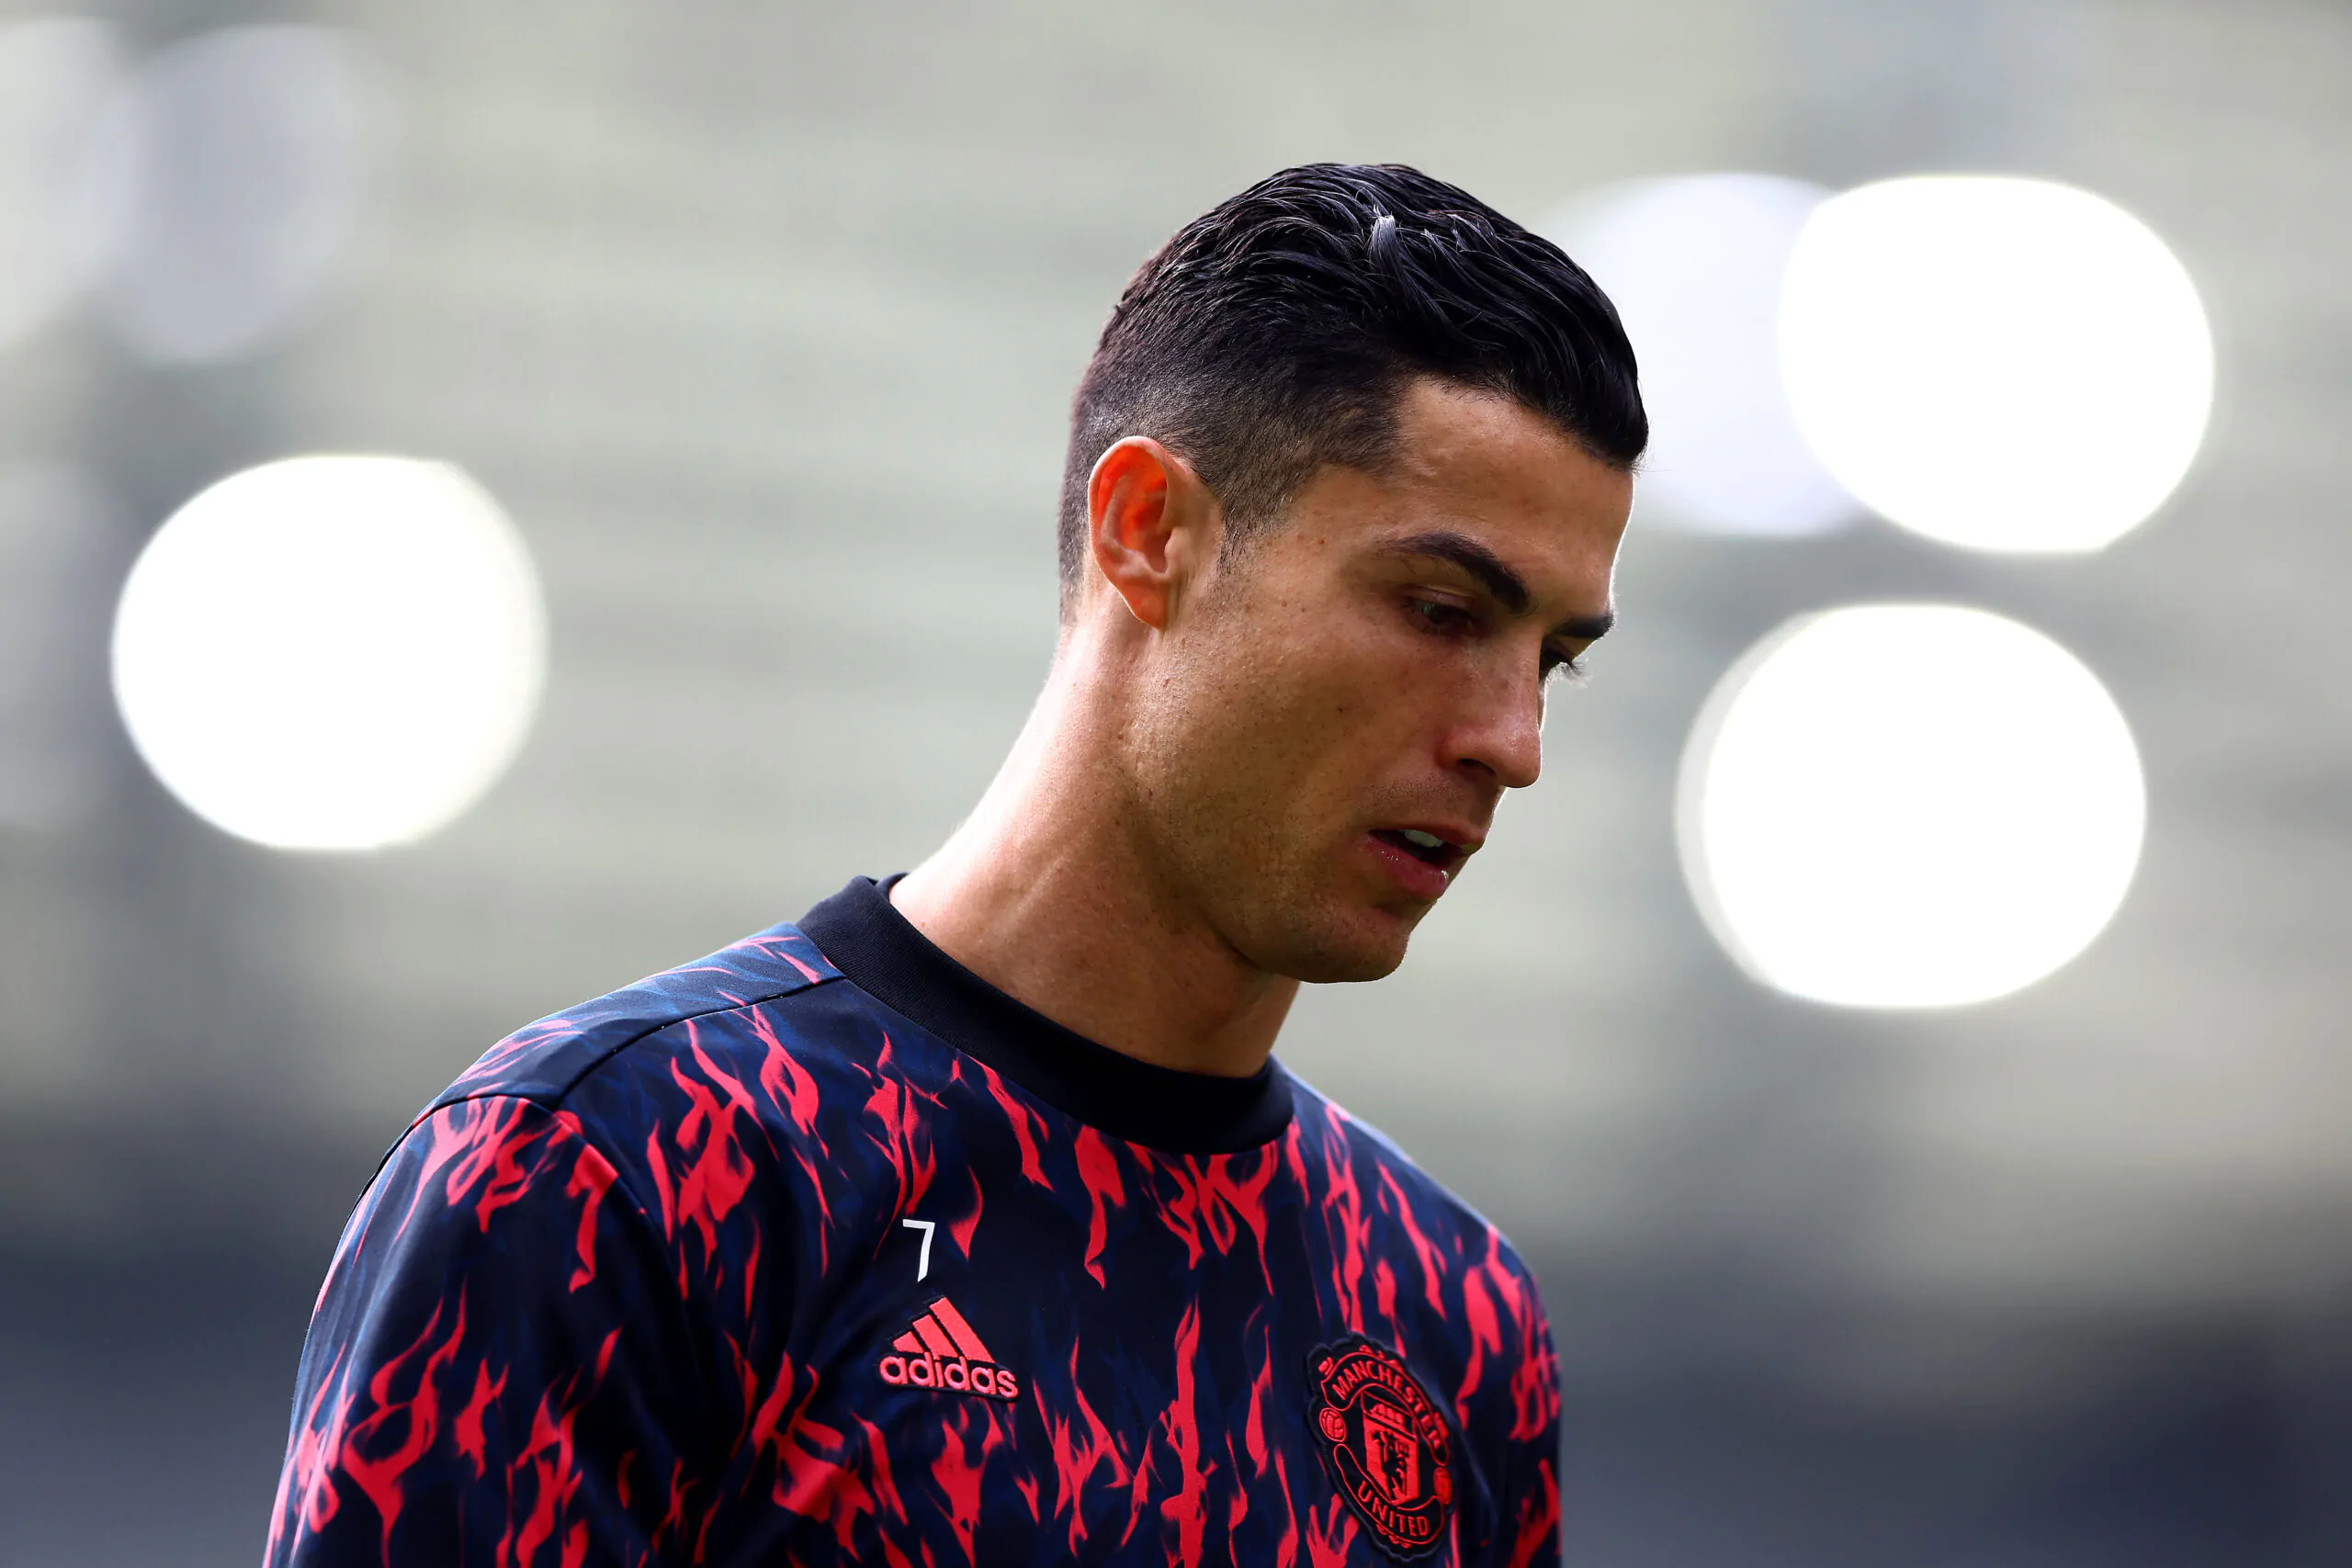 Notizia bomba dall’Inghilterra, offerta a sorpresa per Cristiano Ronaldo! I dettagli